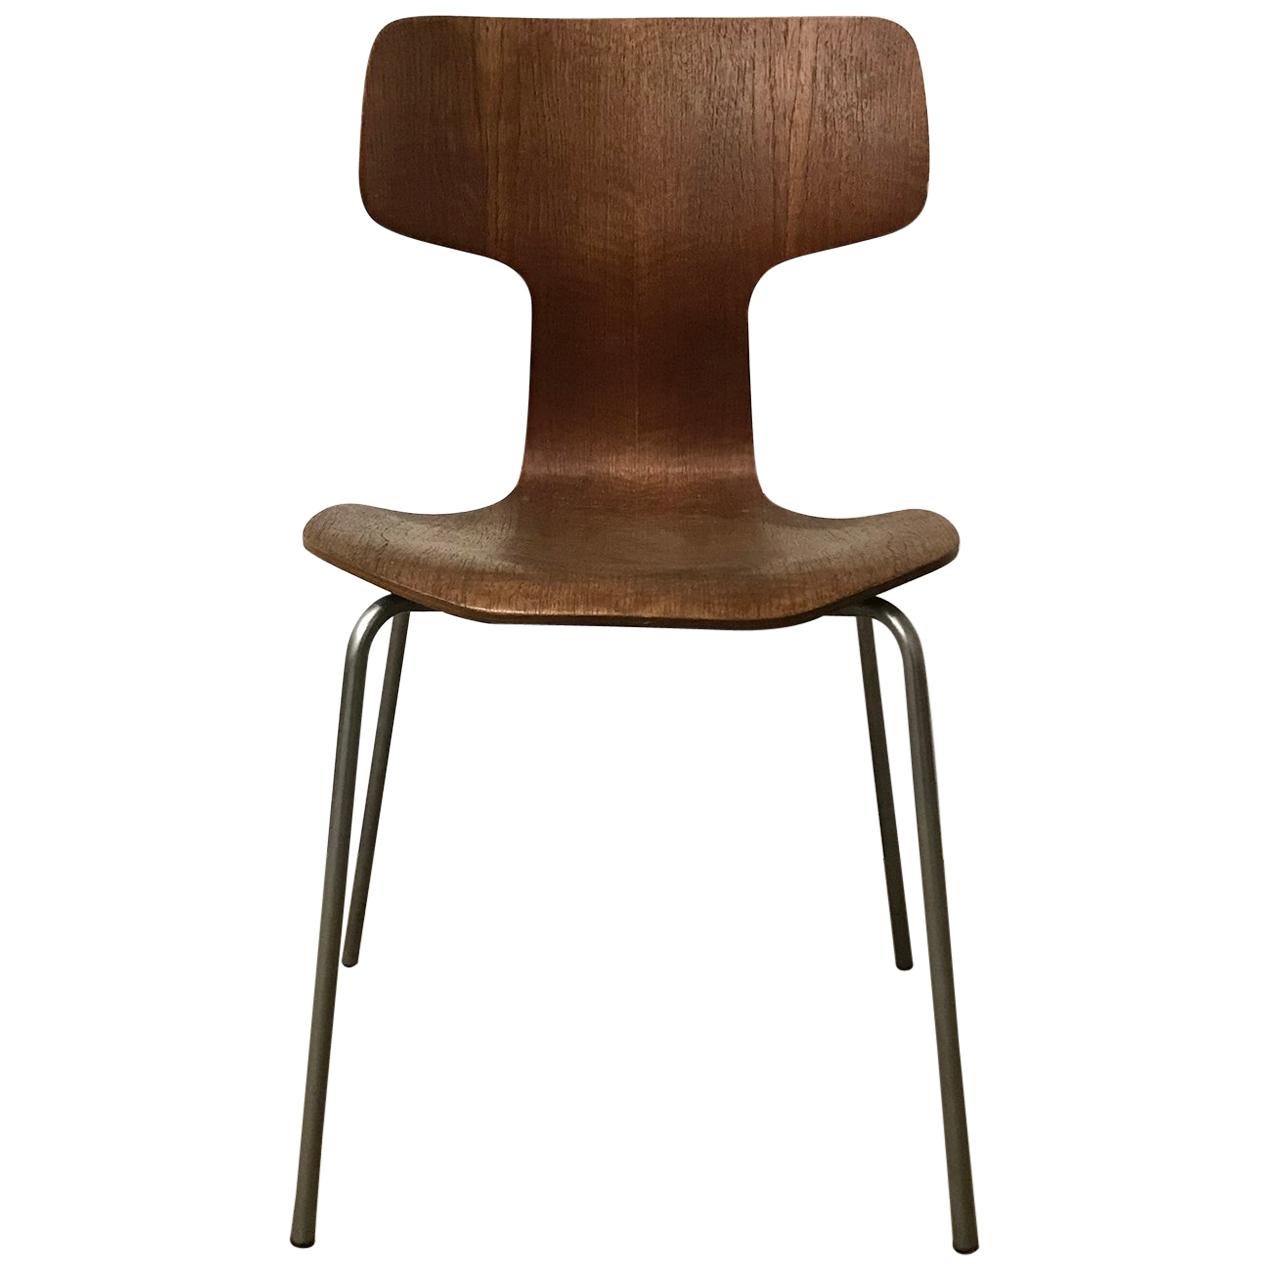 1955, Arne Jacobsen pour Fritz Hansen, original, rare, chaise 3103 avec base grise